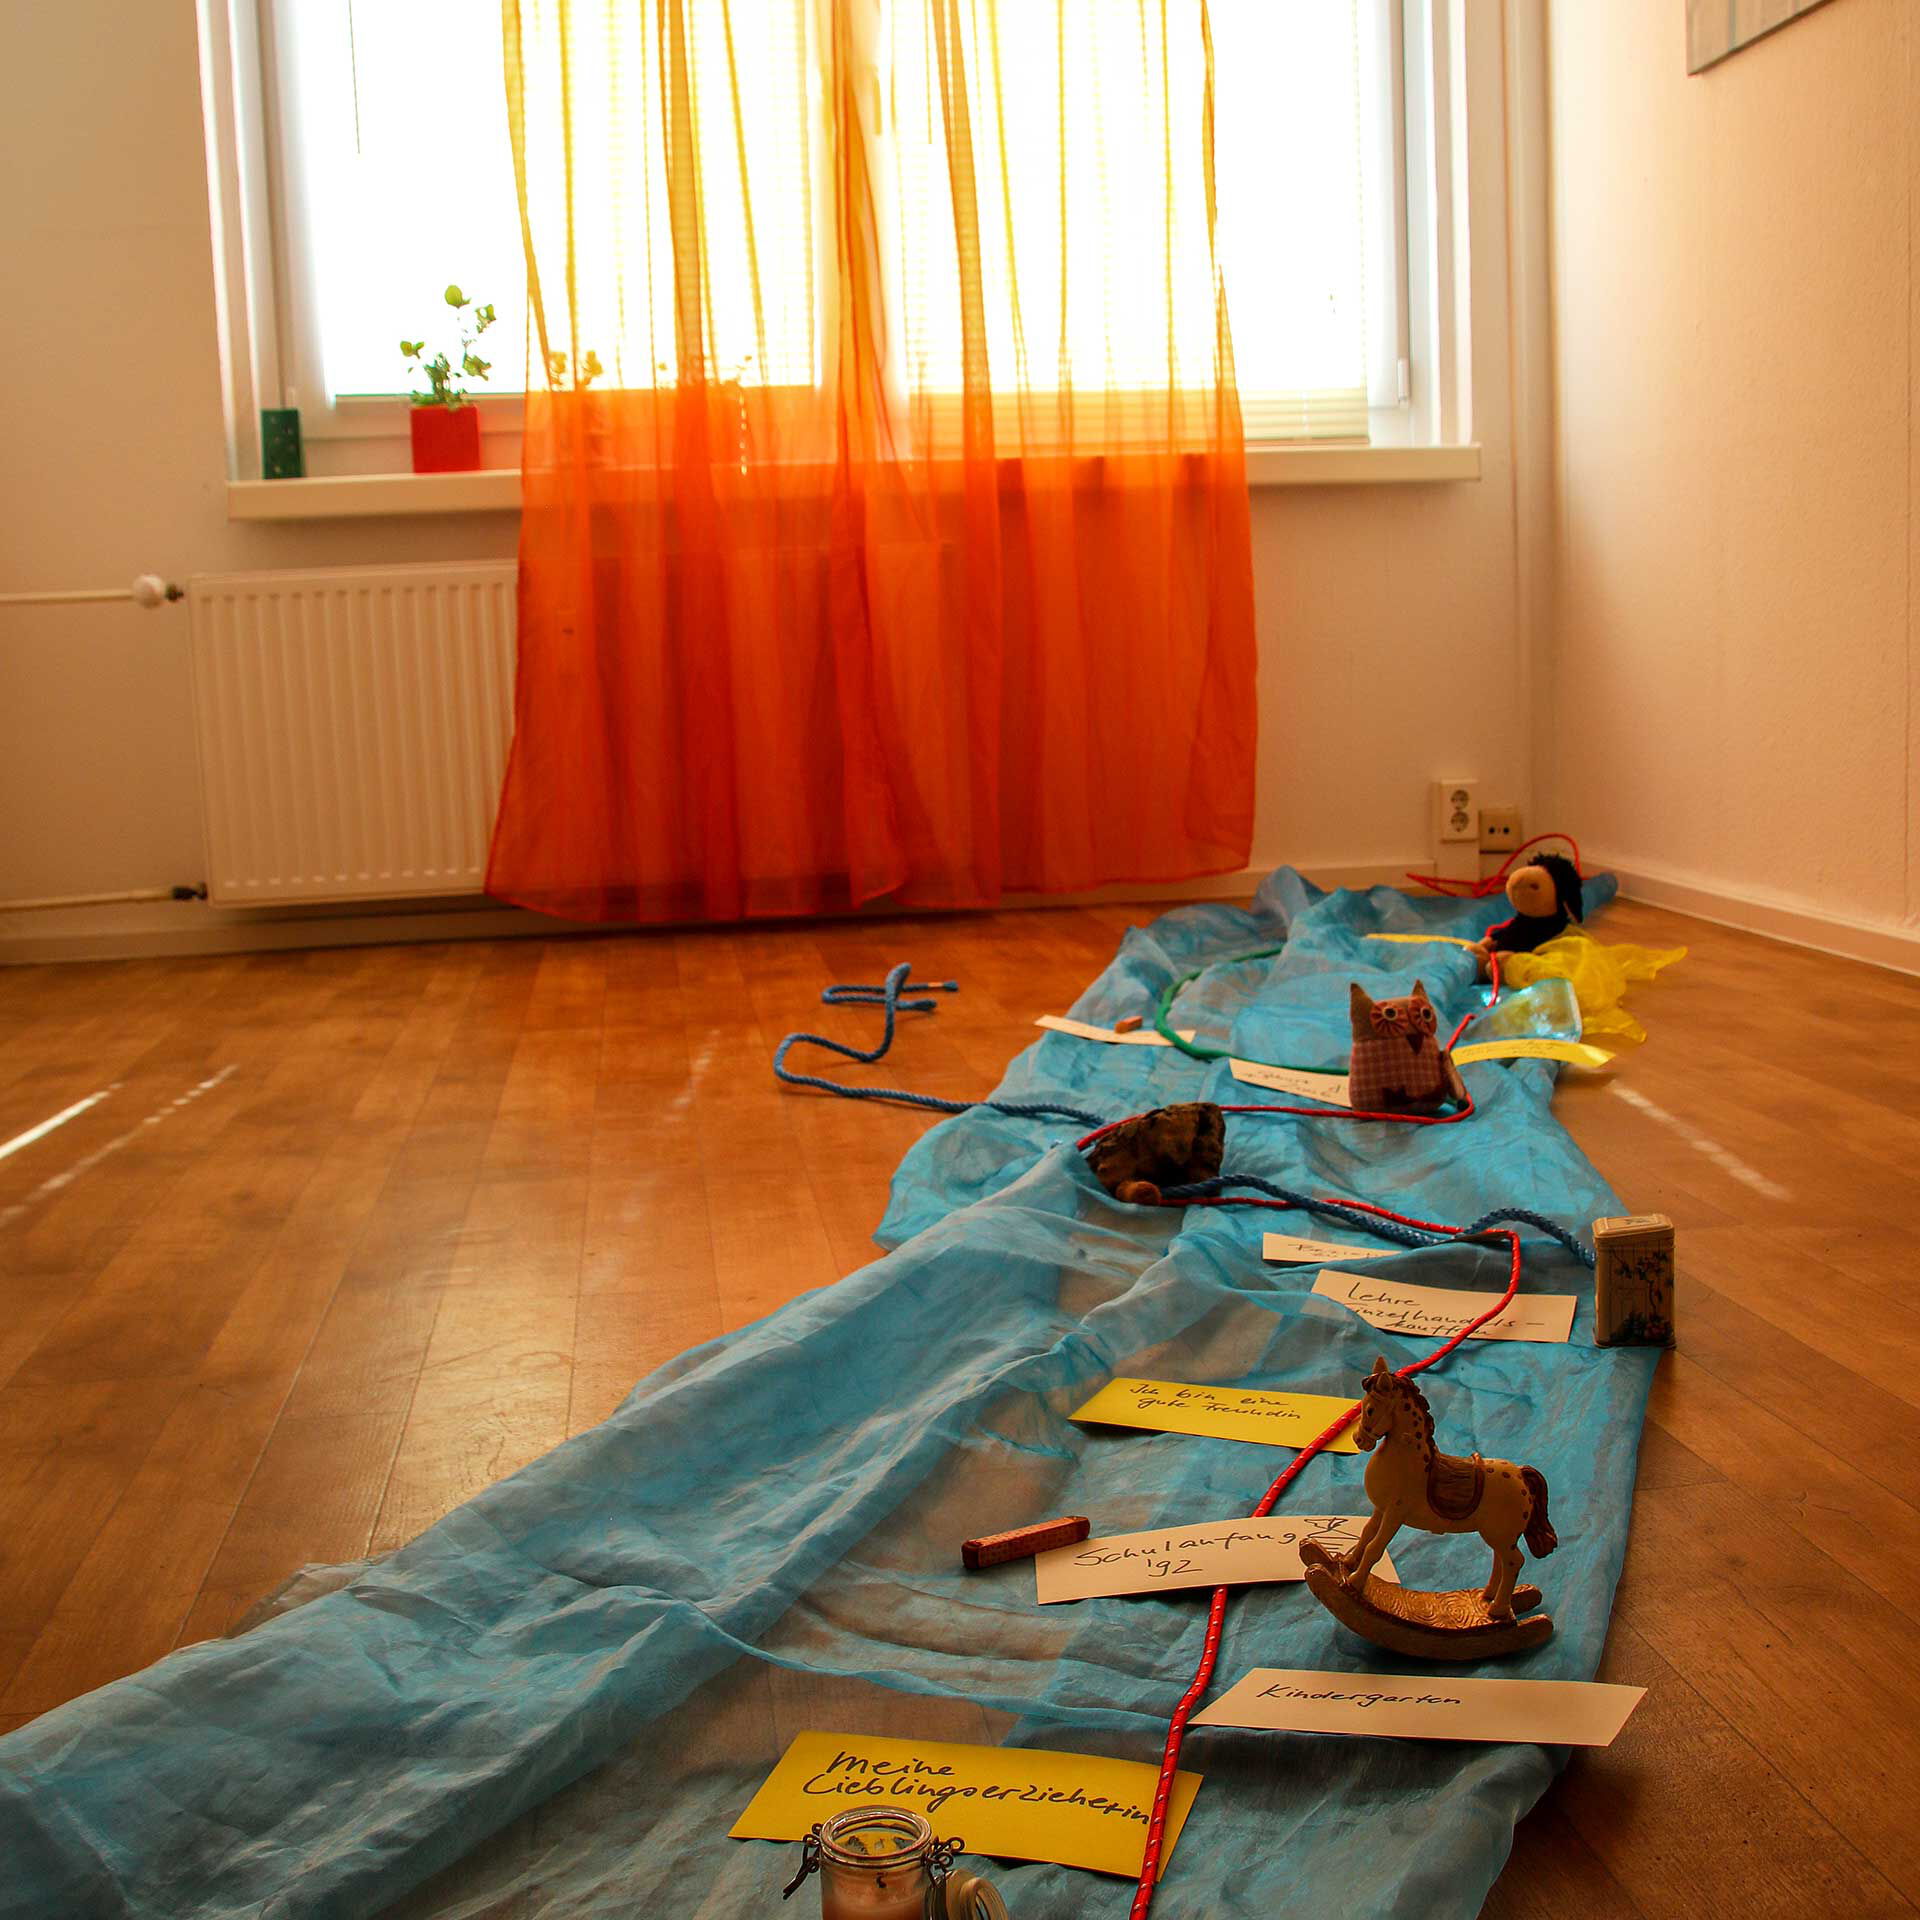 Auf dem Fußboden des Zimmers liegt ein selbstgebastelter Zeitstrahl des Lebens aus Seilen, Stricken, Spielzeugfiguren und blauen Stoff.